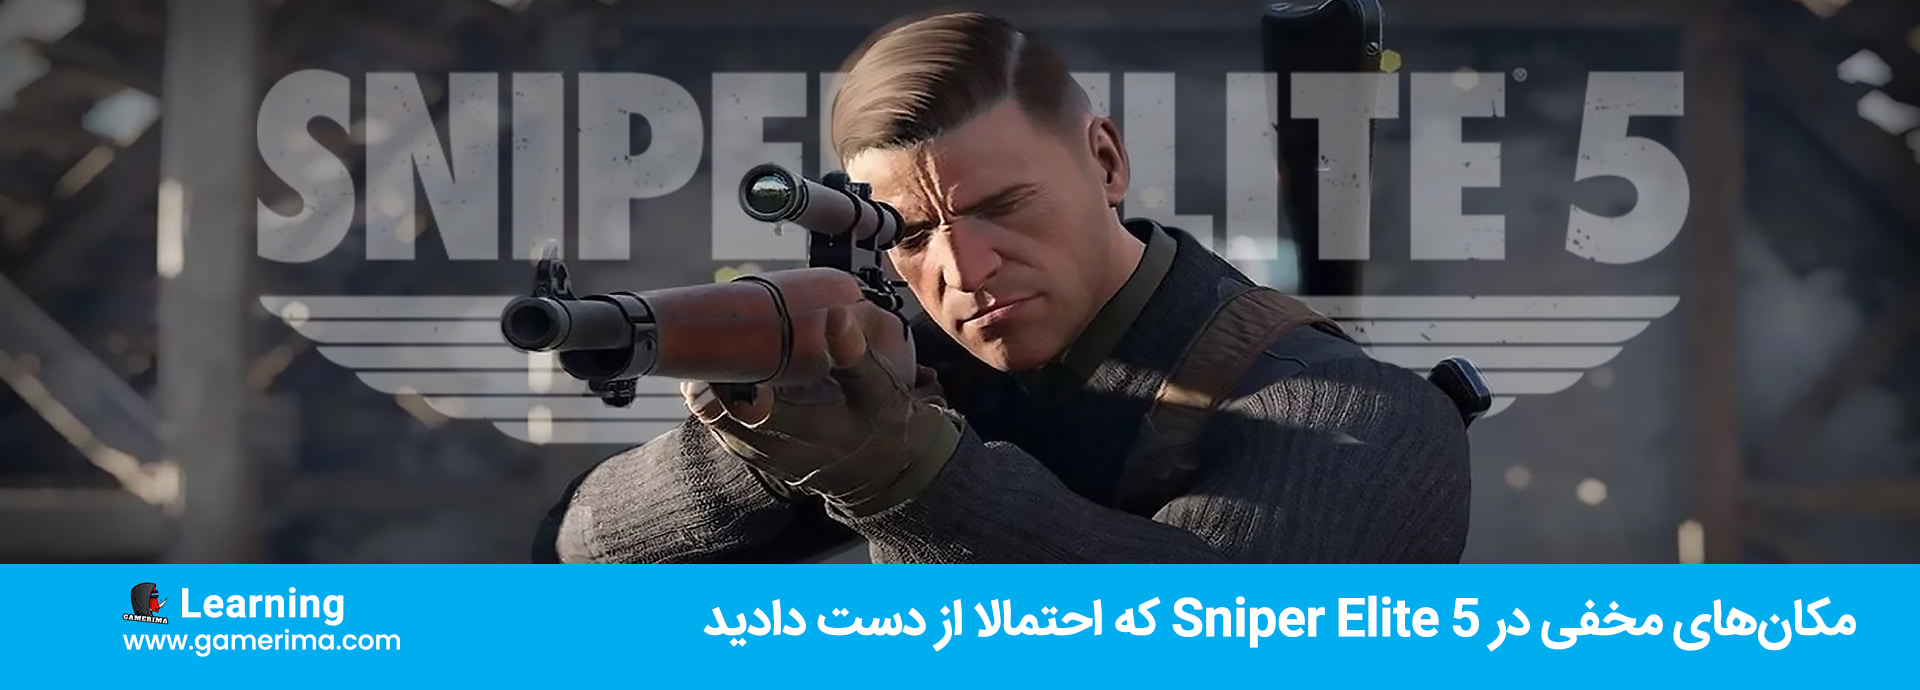 مکان های مخفی در Sniper Elite 5 که احتمالا از دست دادید